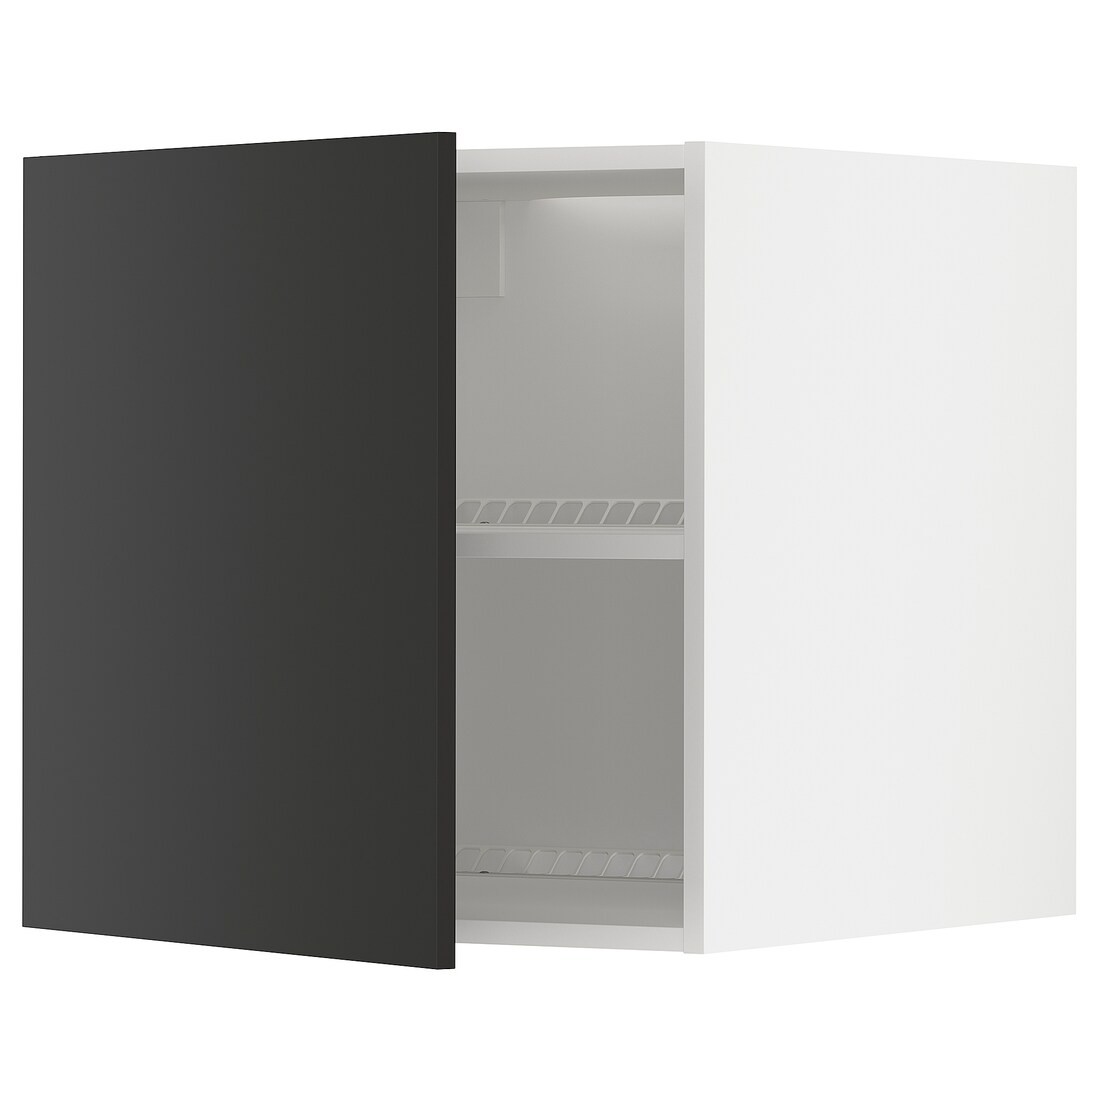 METOD МЕТОД Верхня шафа для холодильника / морозильника, білий / Nickebo матовий антрацит, 60x60 см